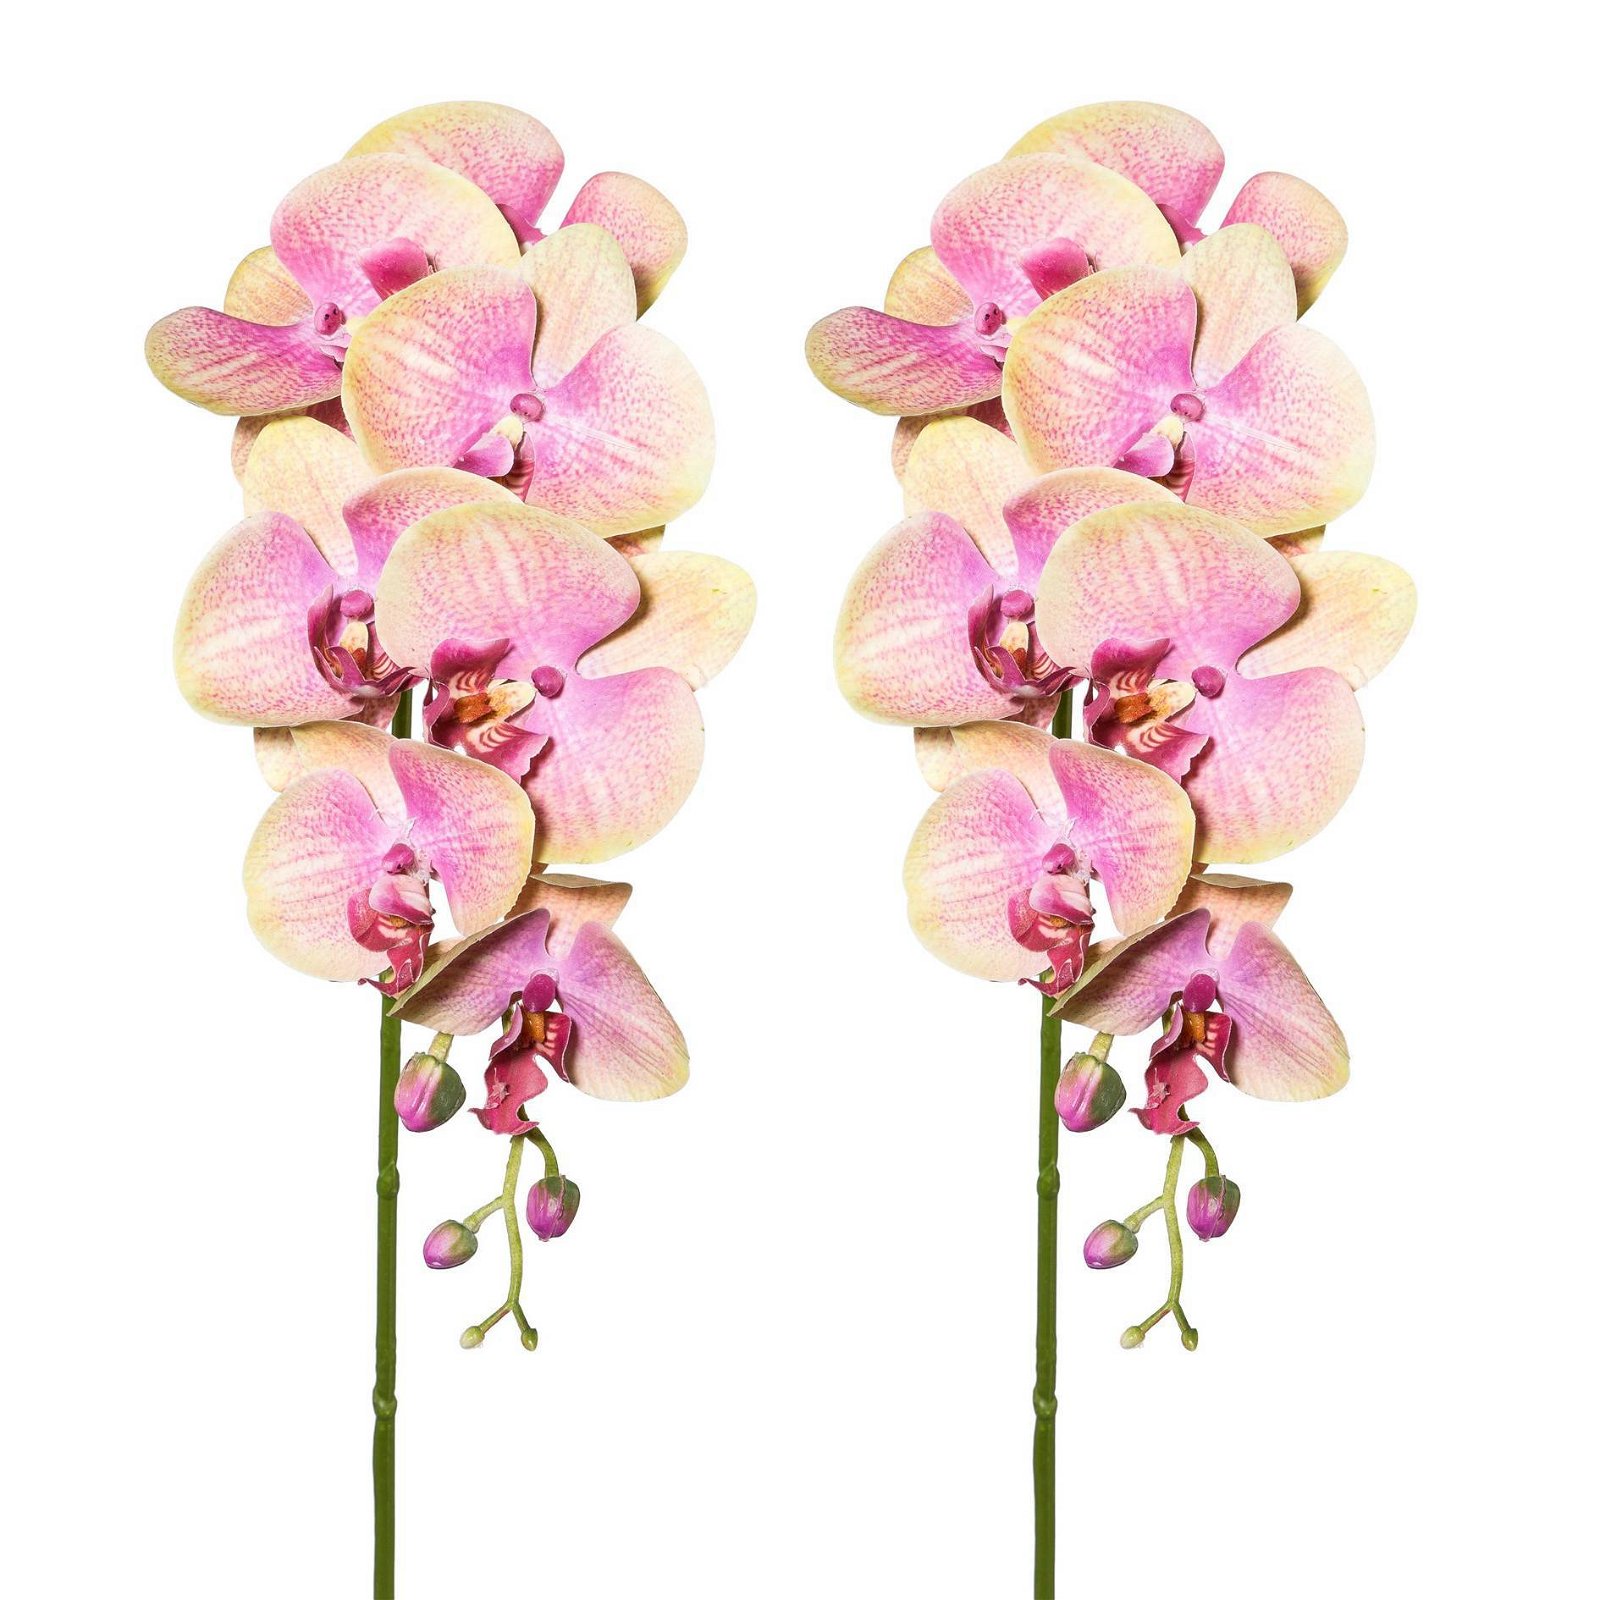 Kunstpflanze Orchideenzweig, grünrosa, ca. 87 cm, 2 Stück